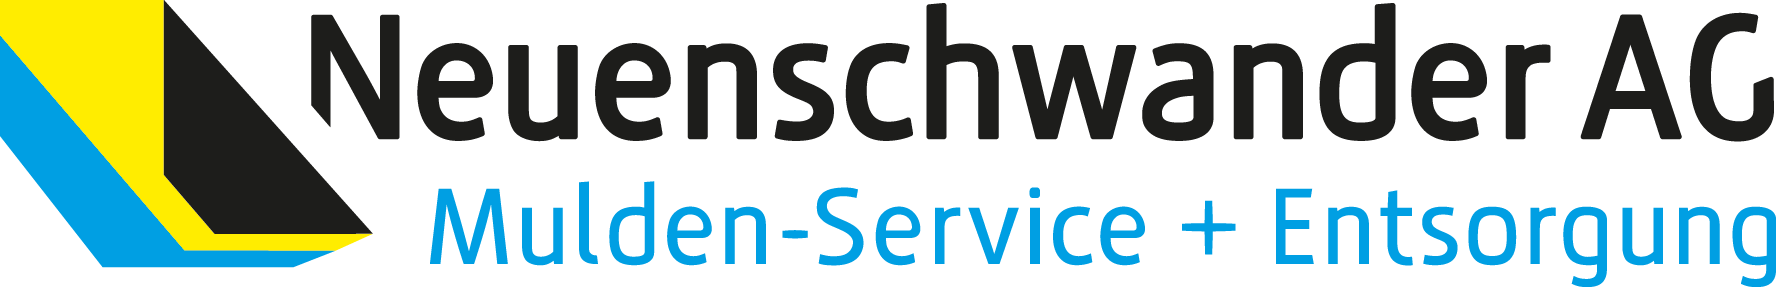 Neuenschwander AG, Mulden-Service